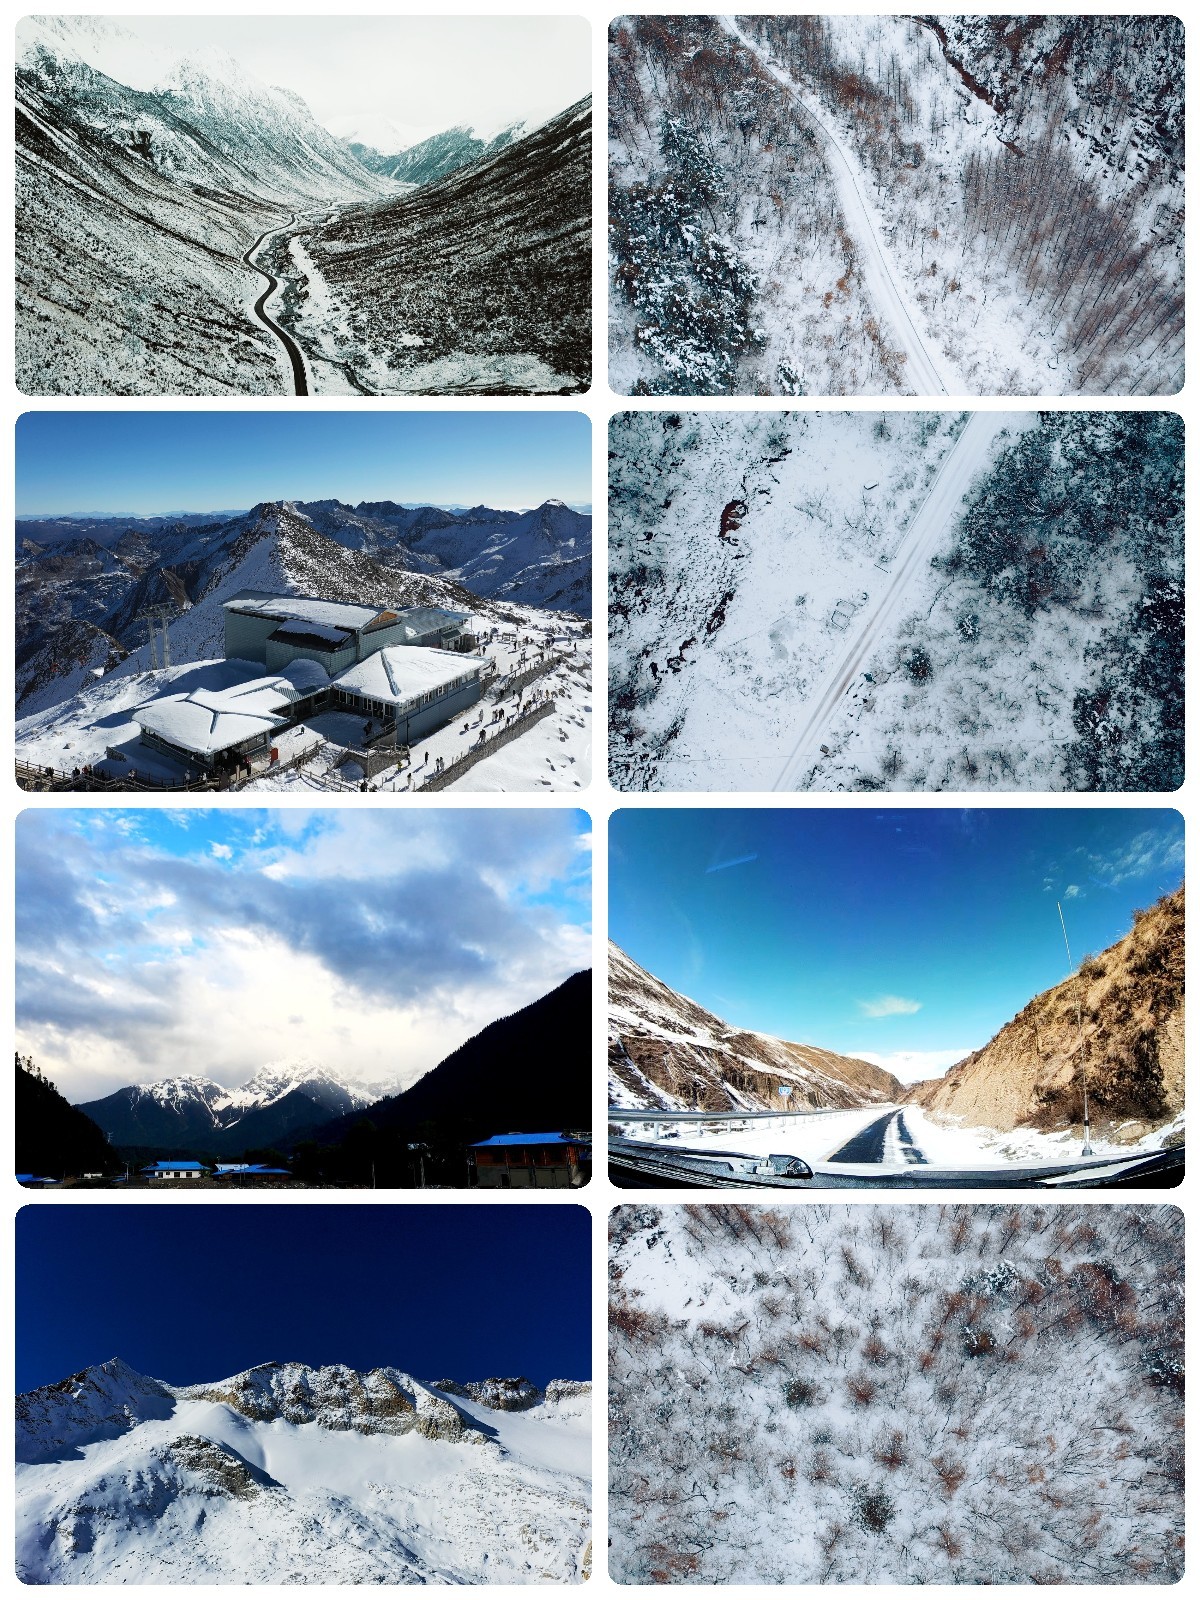 雪山下雪高原西藏公路雪域冬天大雪青藏旅游